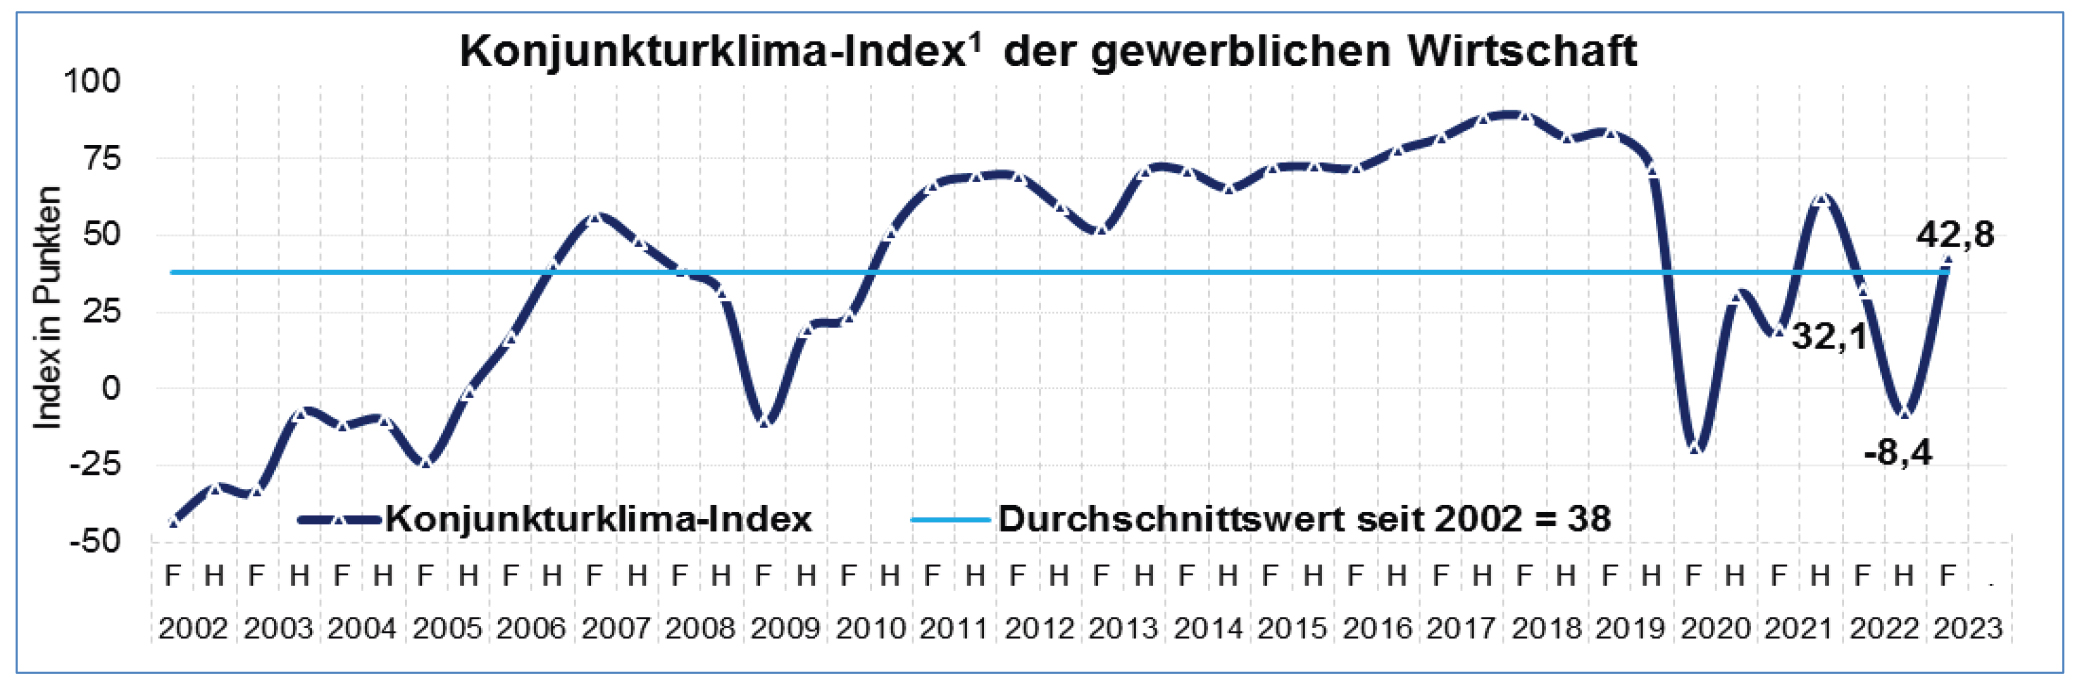 Konjunkturklima-Index der mitteldeutschen Wirtschaft